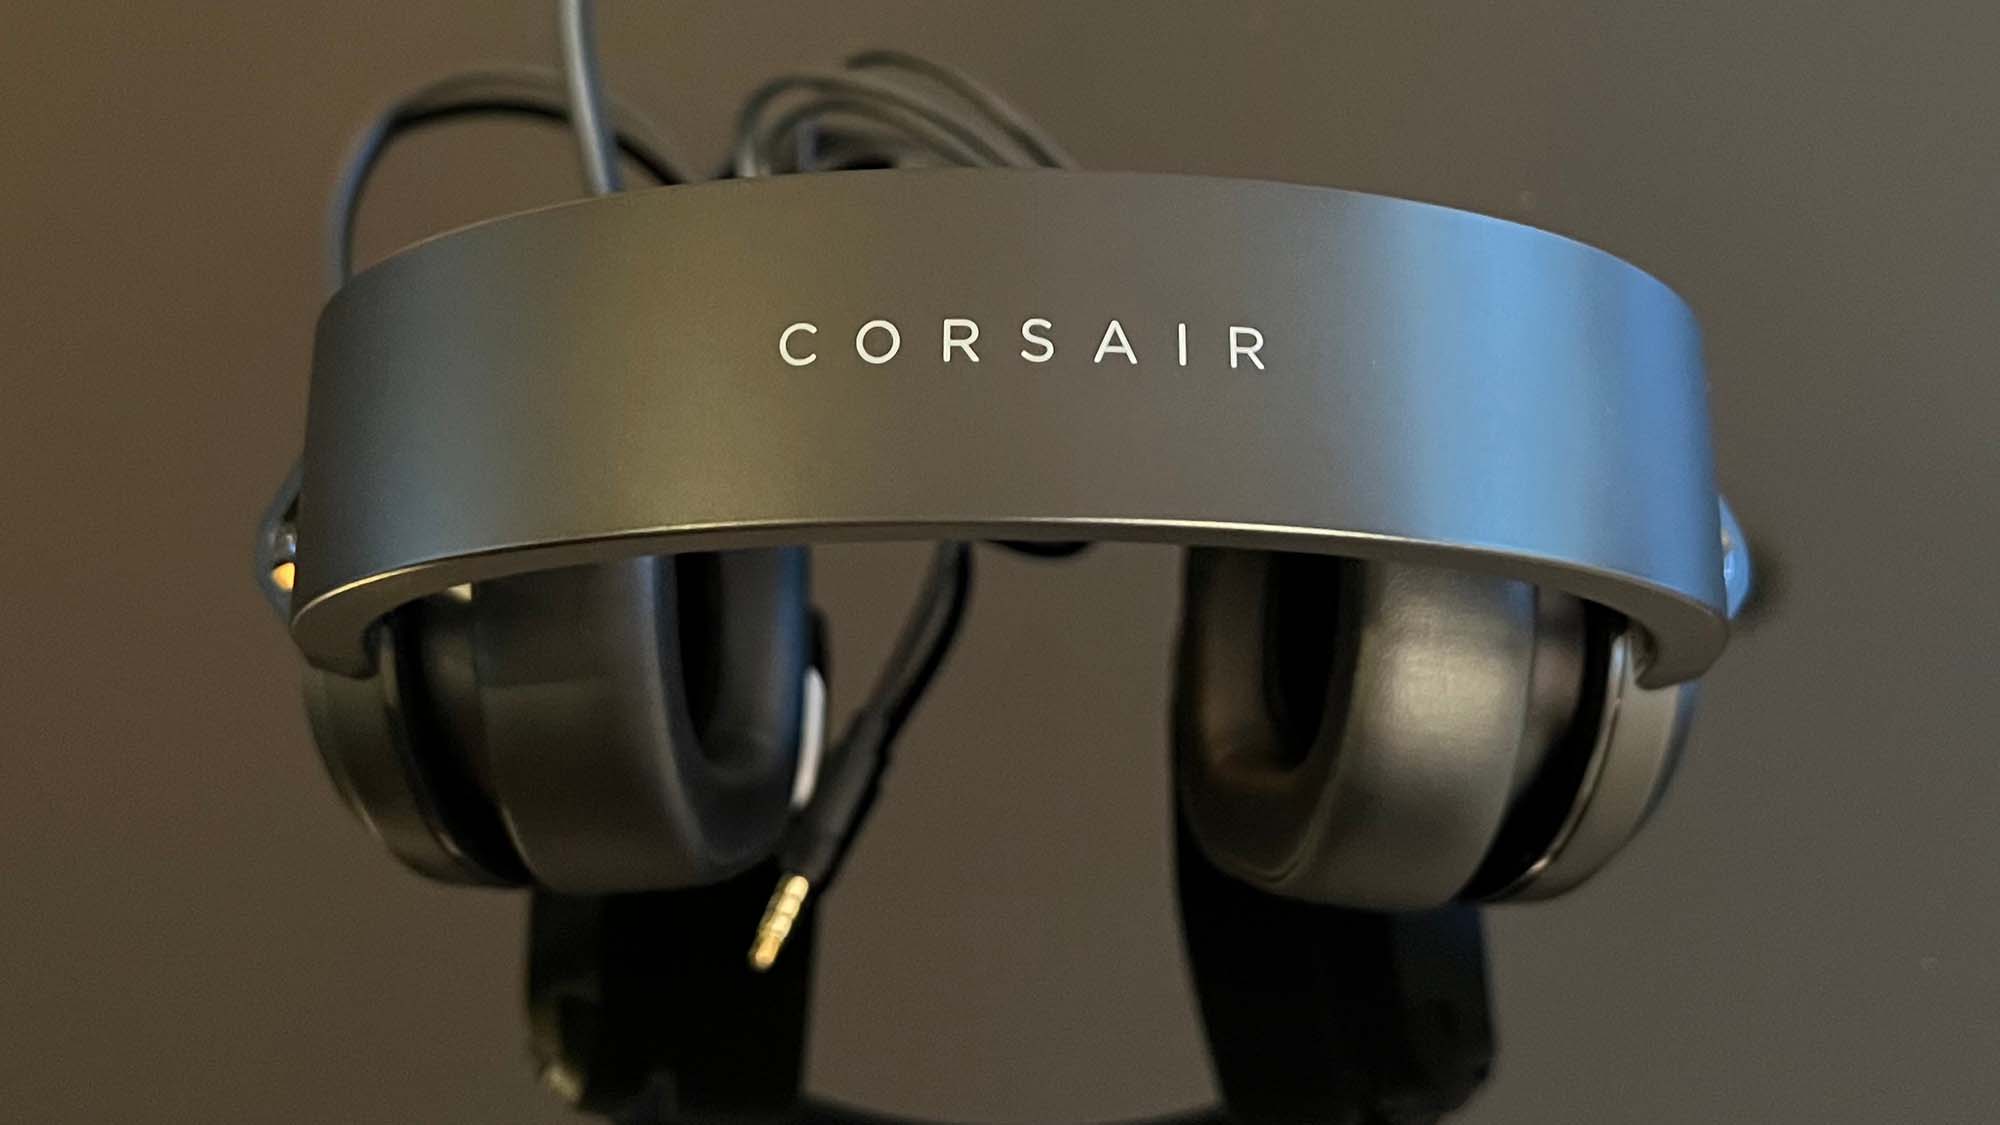 A Corsair HS55 Stereo